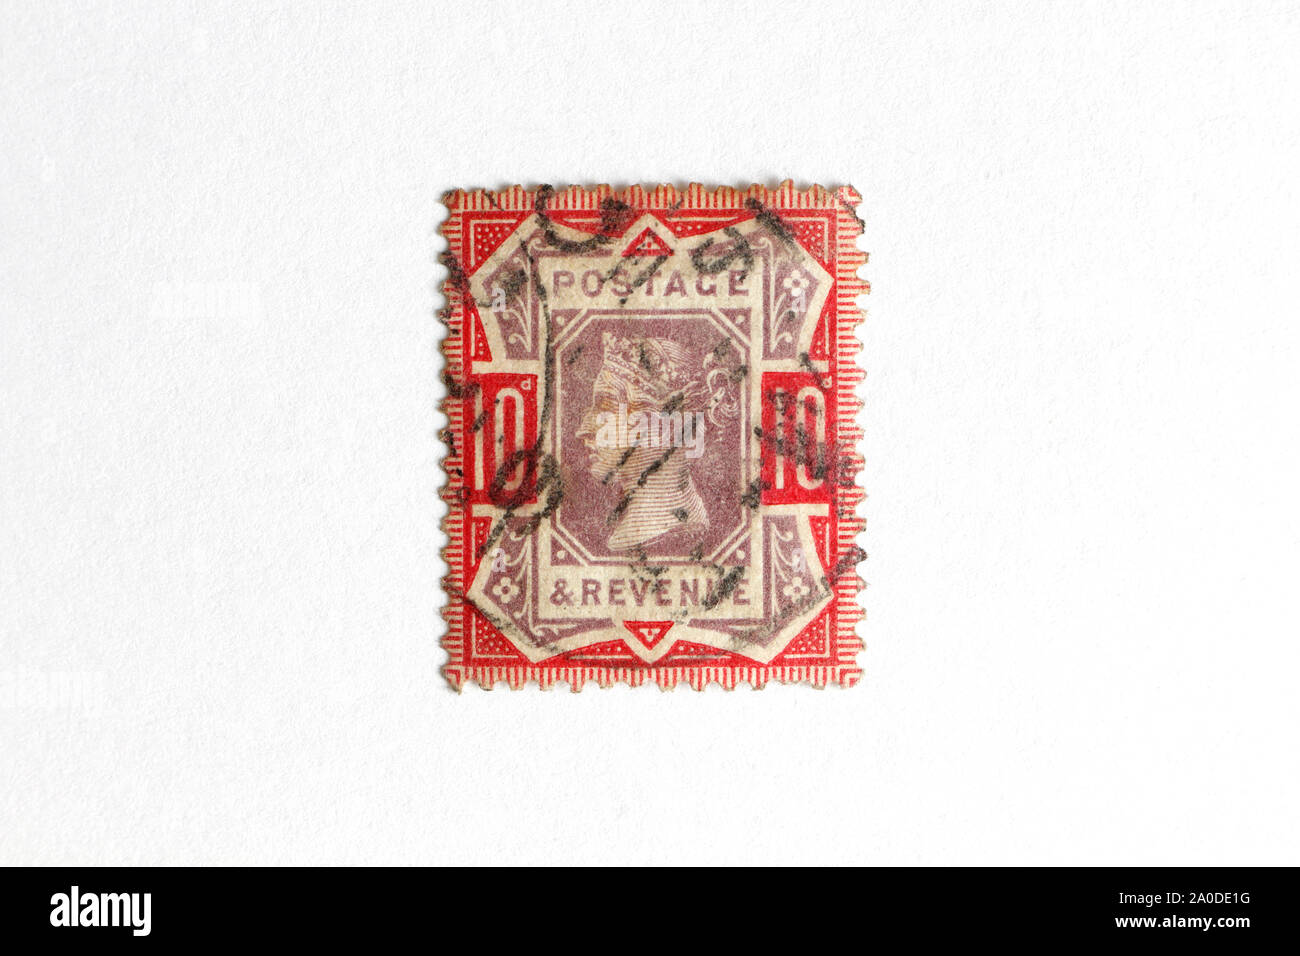 La reine Victoria, 10 Timbres-poste britannique penny, fond blanc Banque D'Images